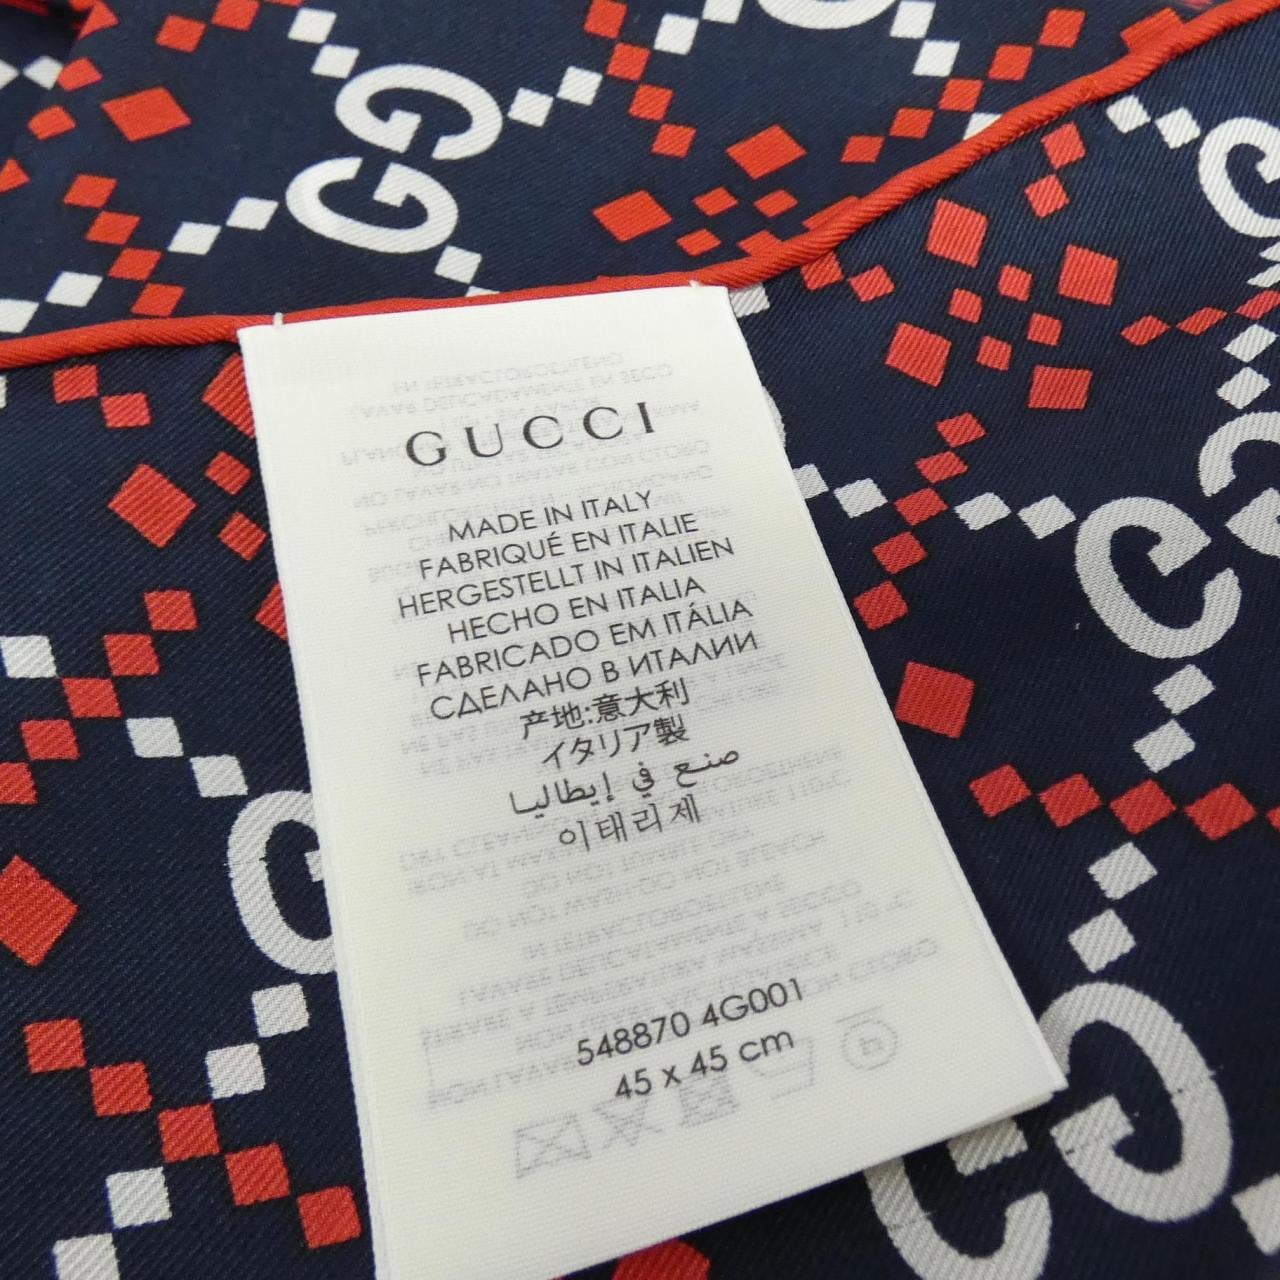 Gucci 548870 4G001 Scarf